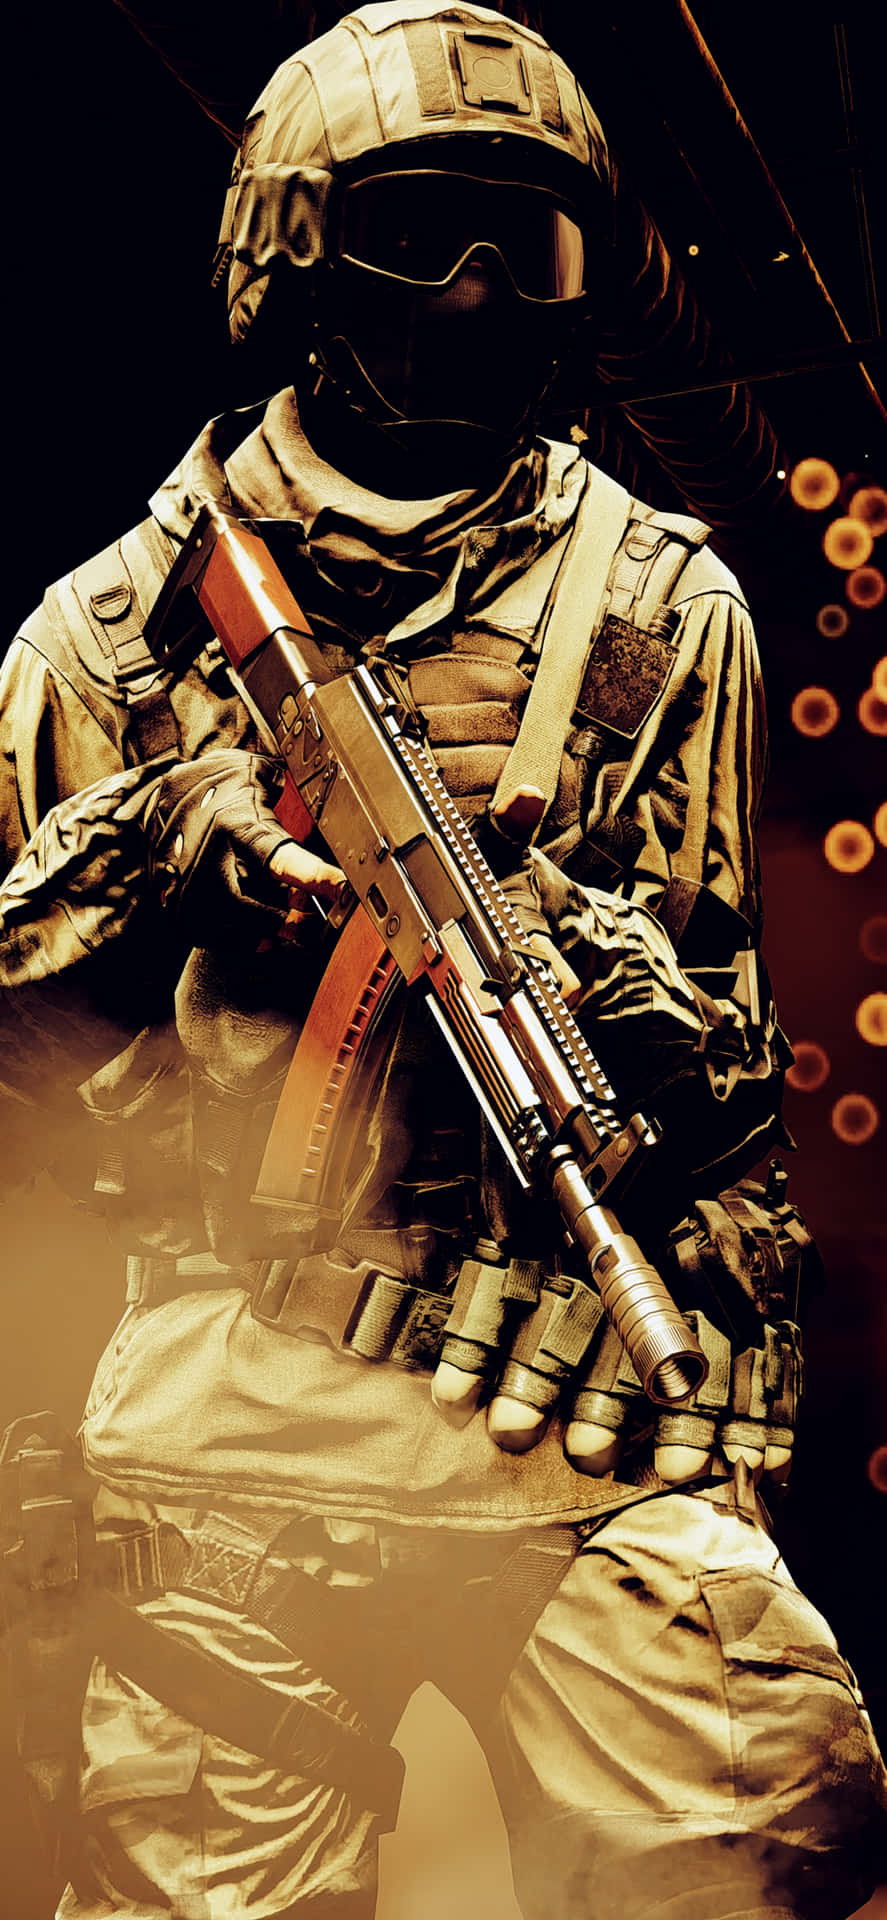 Gördig Redo Att Skjuta Iväg På Ett Explosivt Äventyr Med Iphone X Och Battlefield 4.